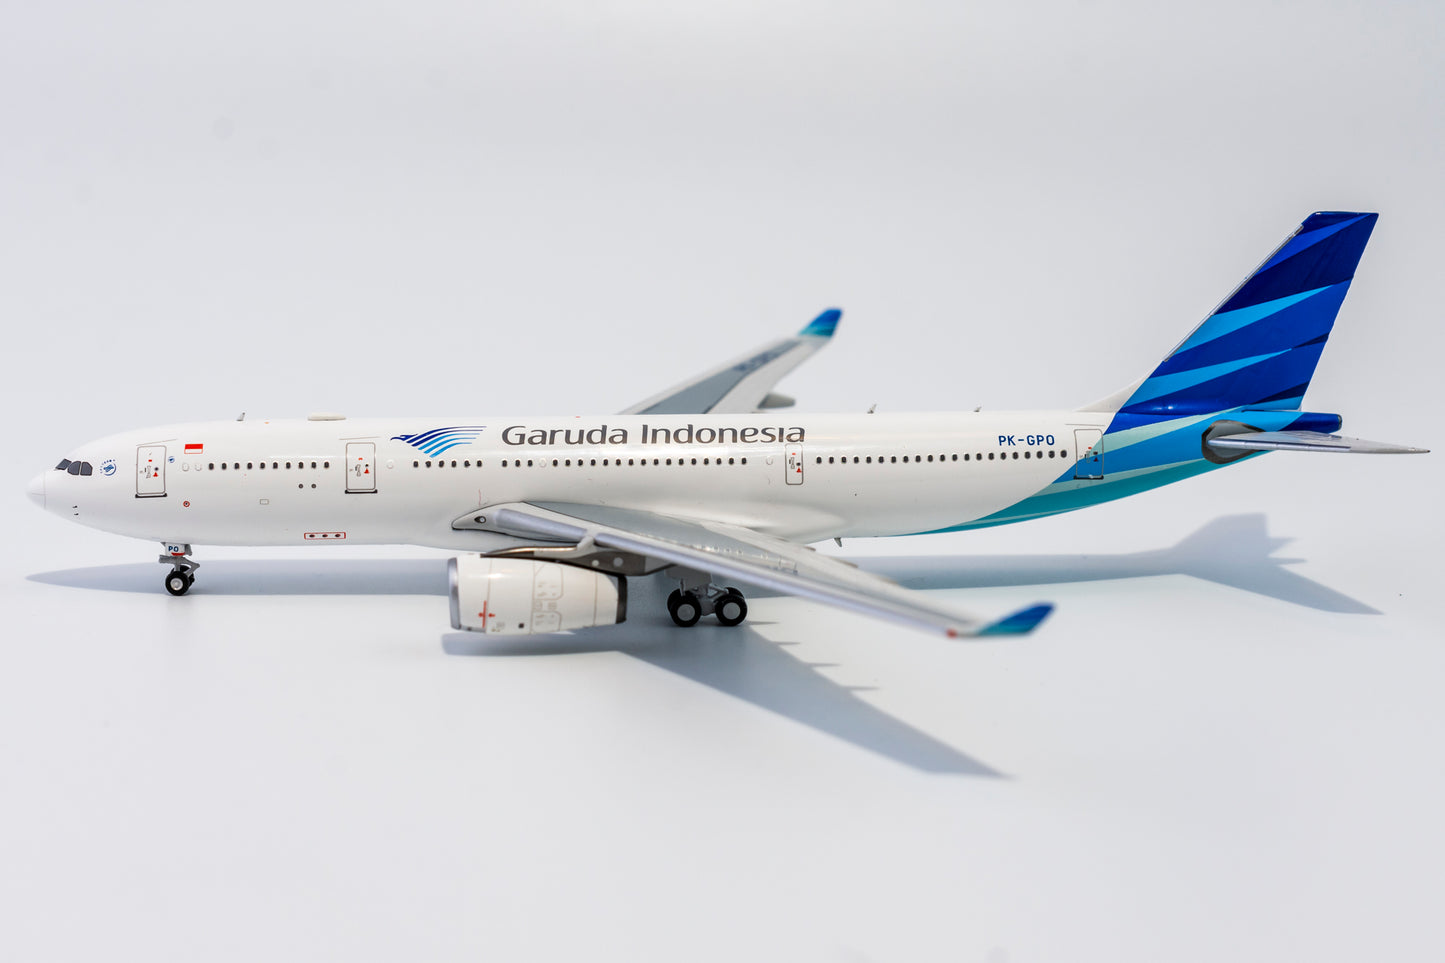 1:400 NG Models Garuda Indonesia Airbus A330-200 PK-SPD NG61025